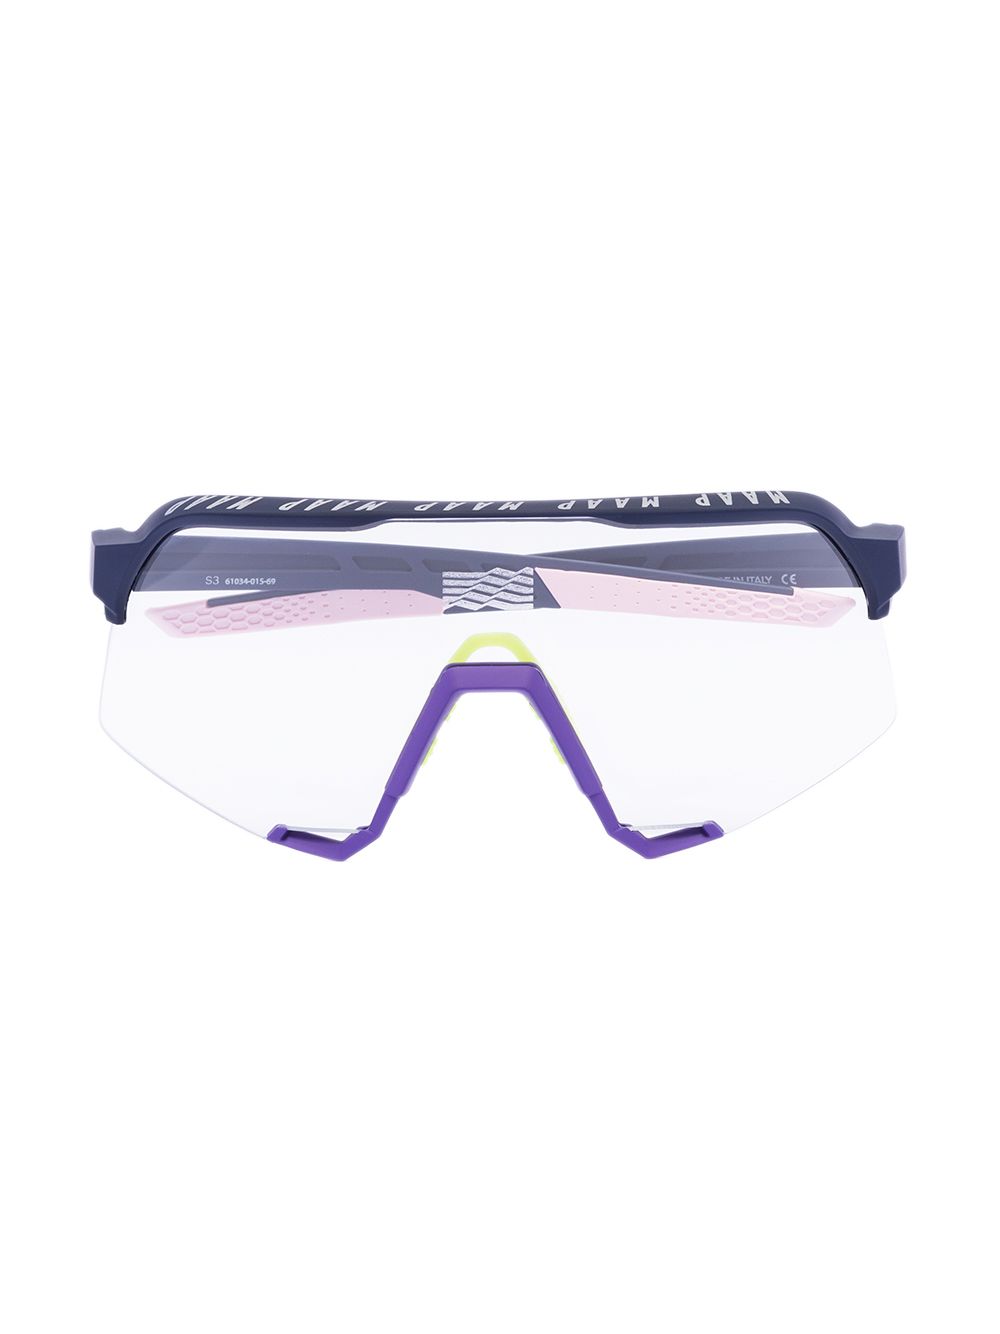 фото Maap лыжные очки s3 из коллаборации с 100%